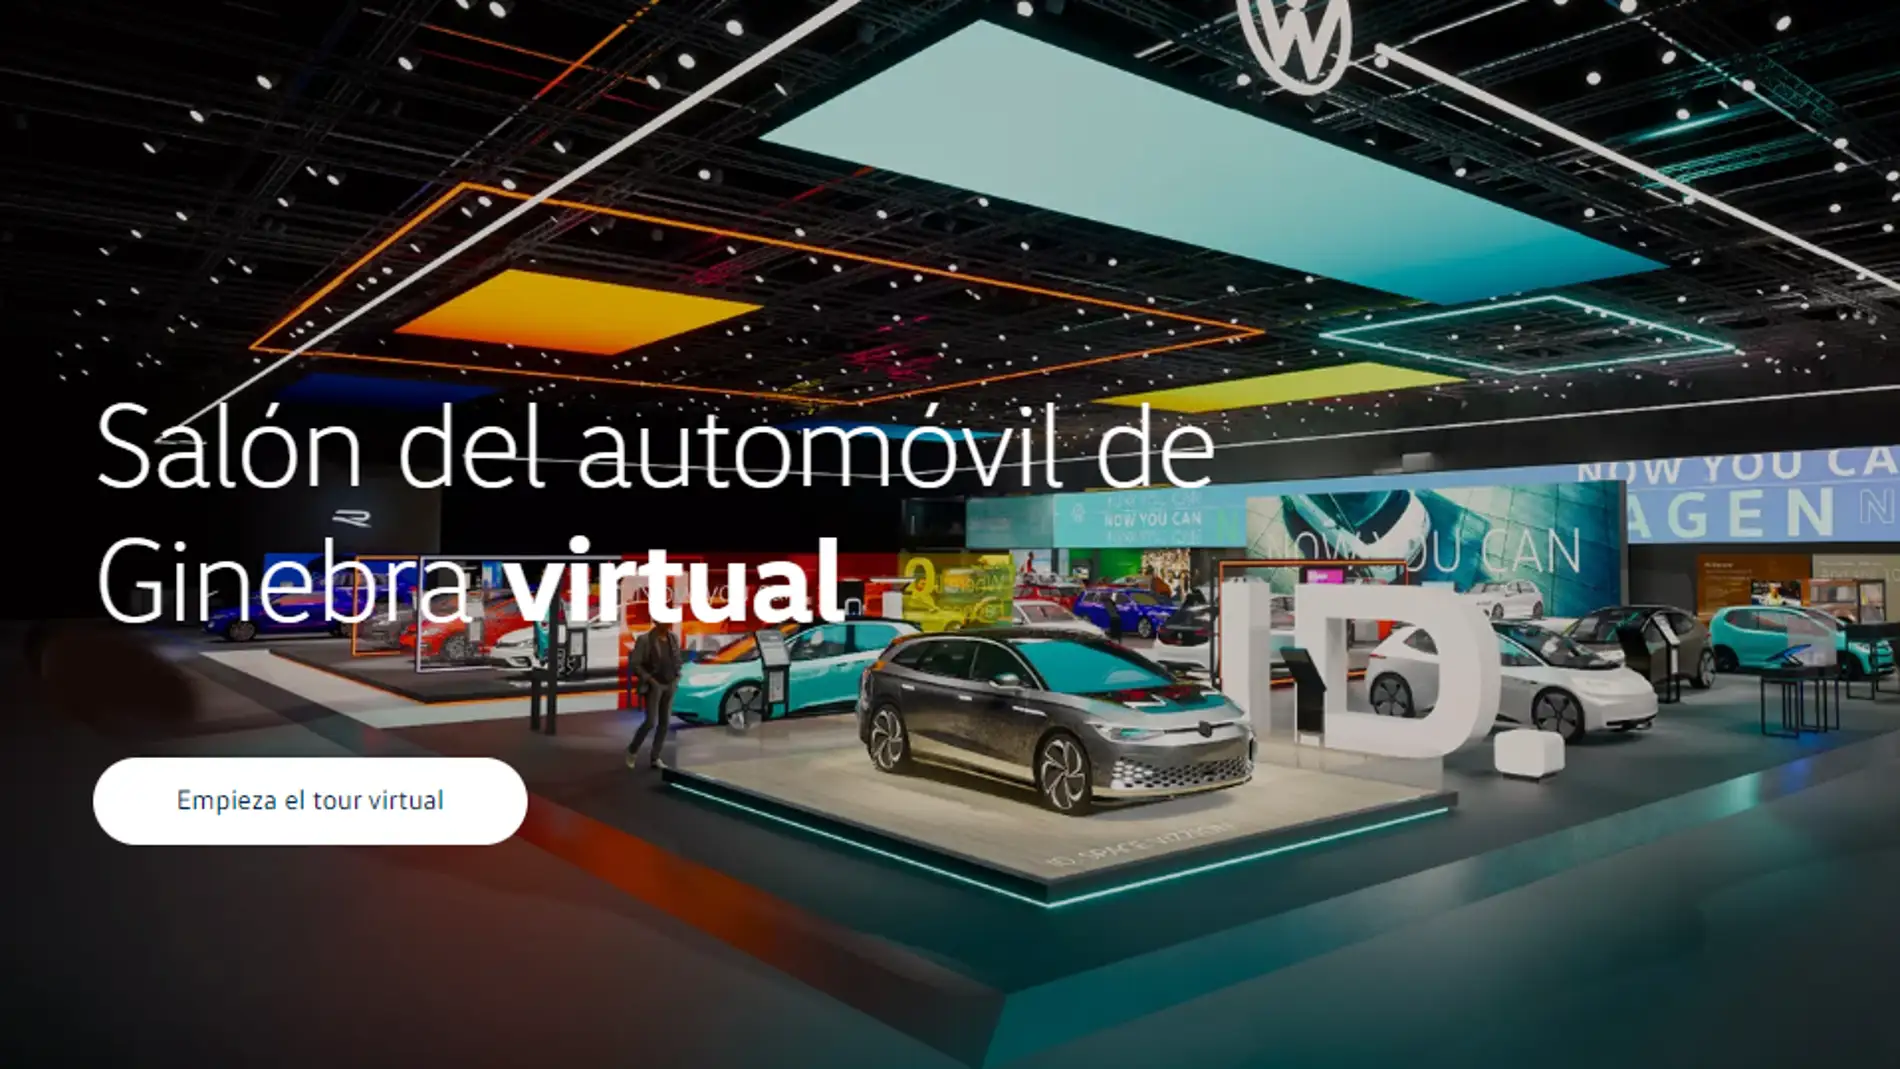 Salón del automóvil de Ginebra virtual de Volkswagen